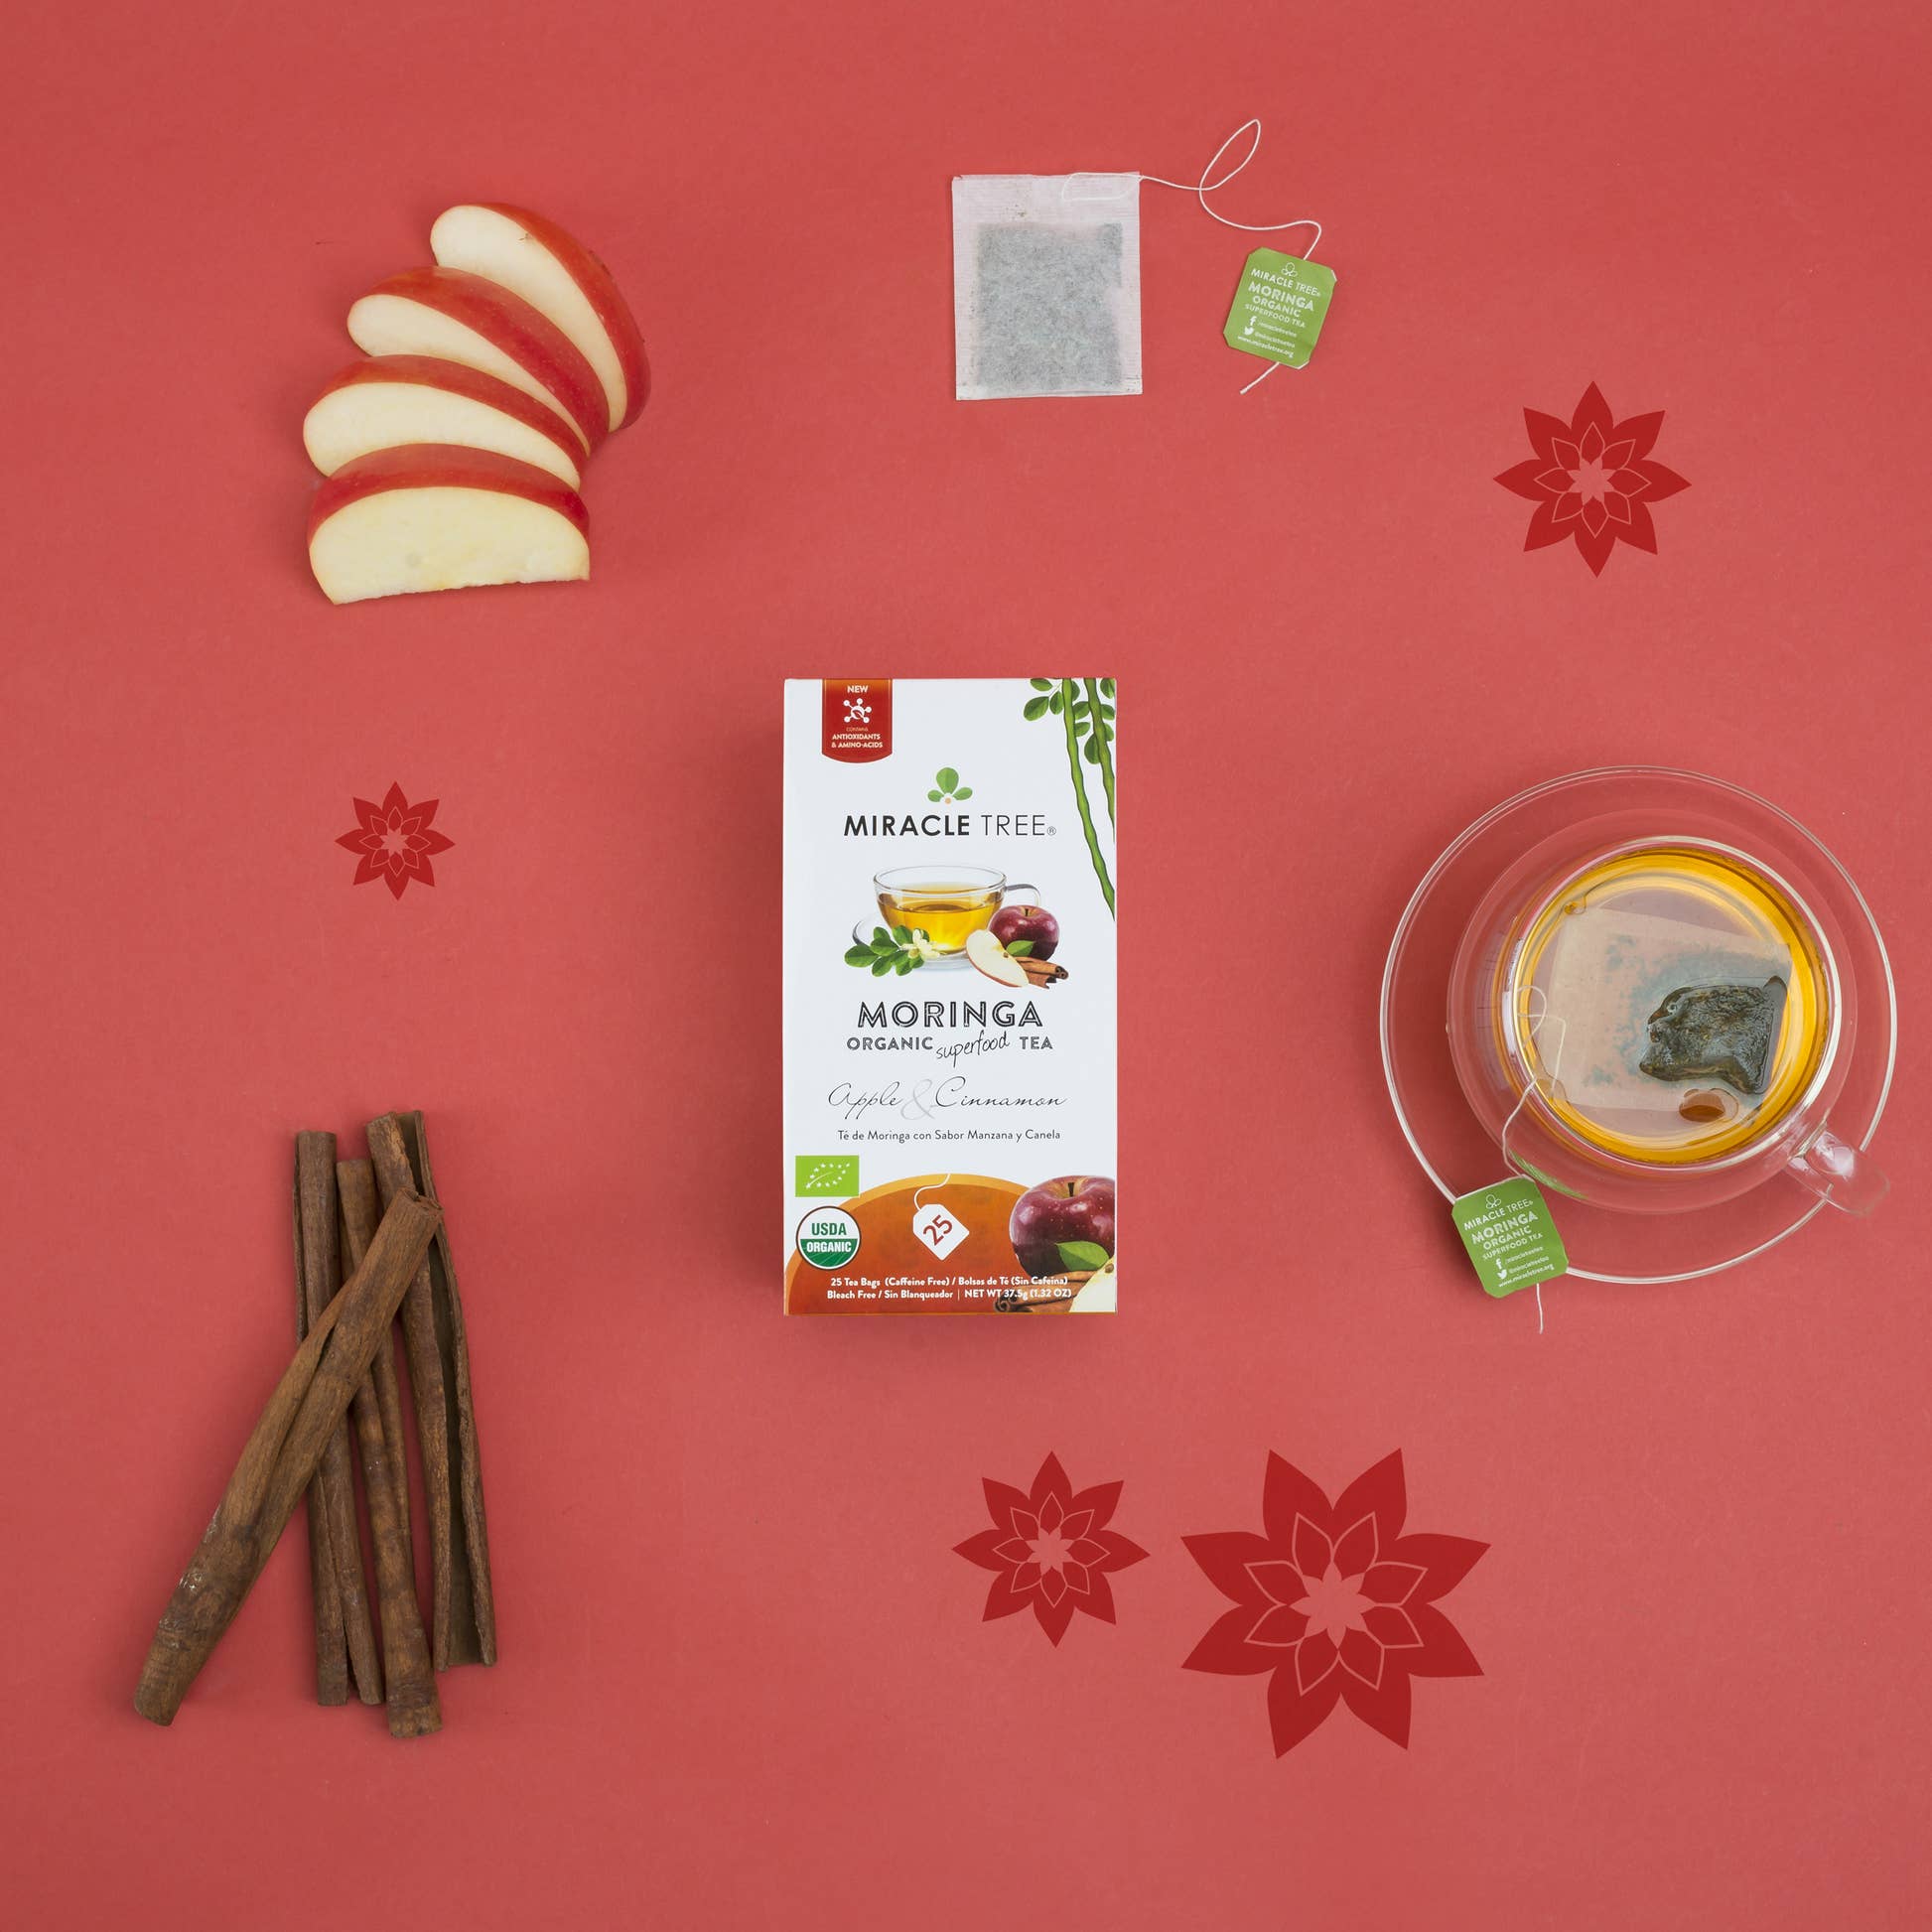 Organic Moringa Herbal Tea - Apple & Cinnamon by Miracle Tree ingredients picture